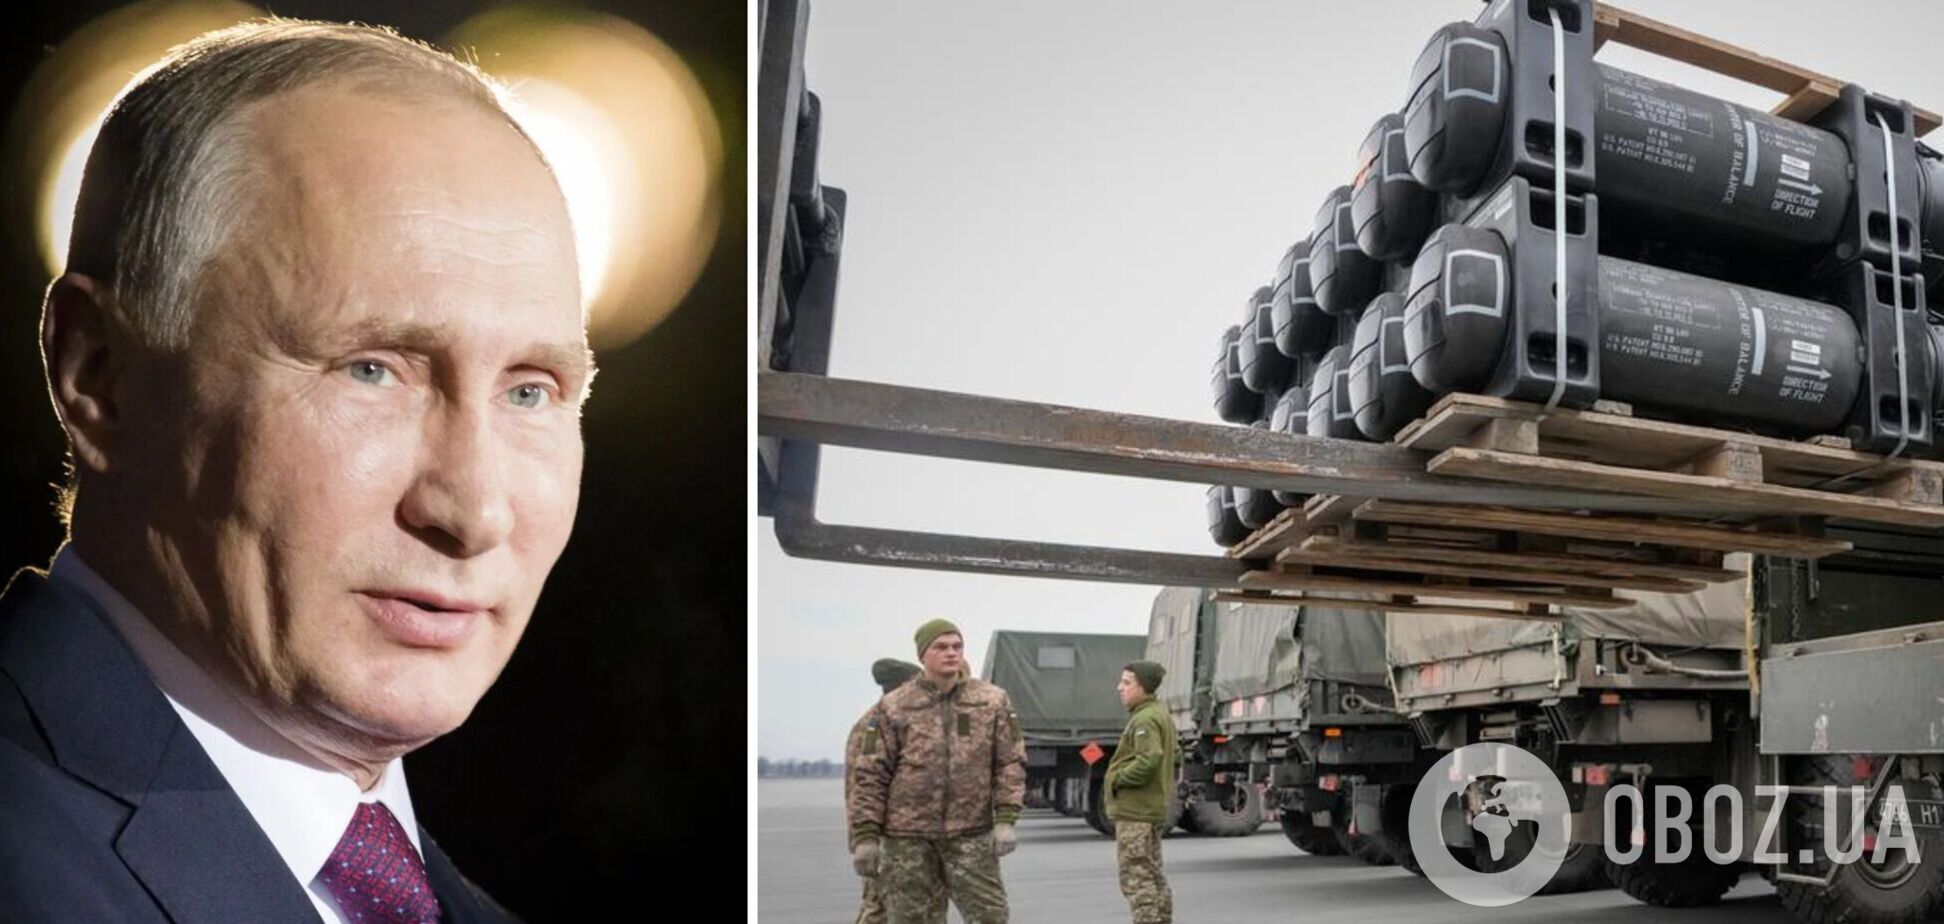 РФ может совершить теракт в Европе, чтобы помешать поставкам Украине вооружения – СНБО